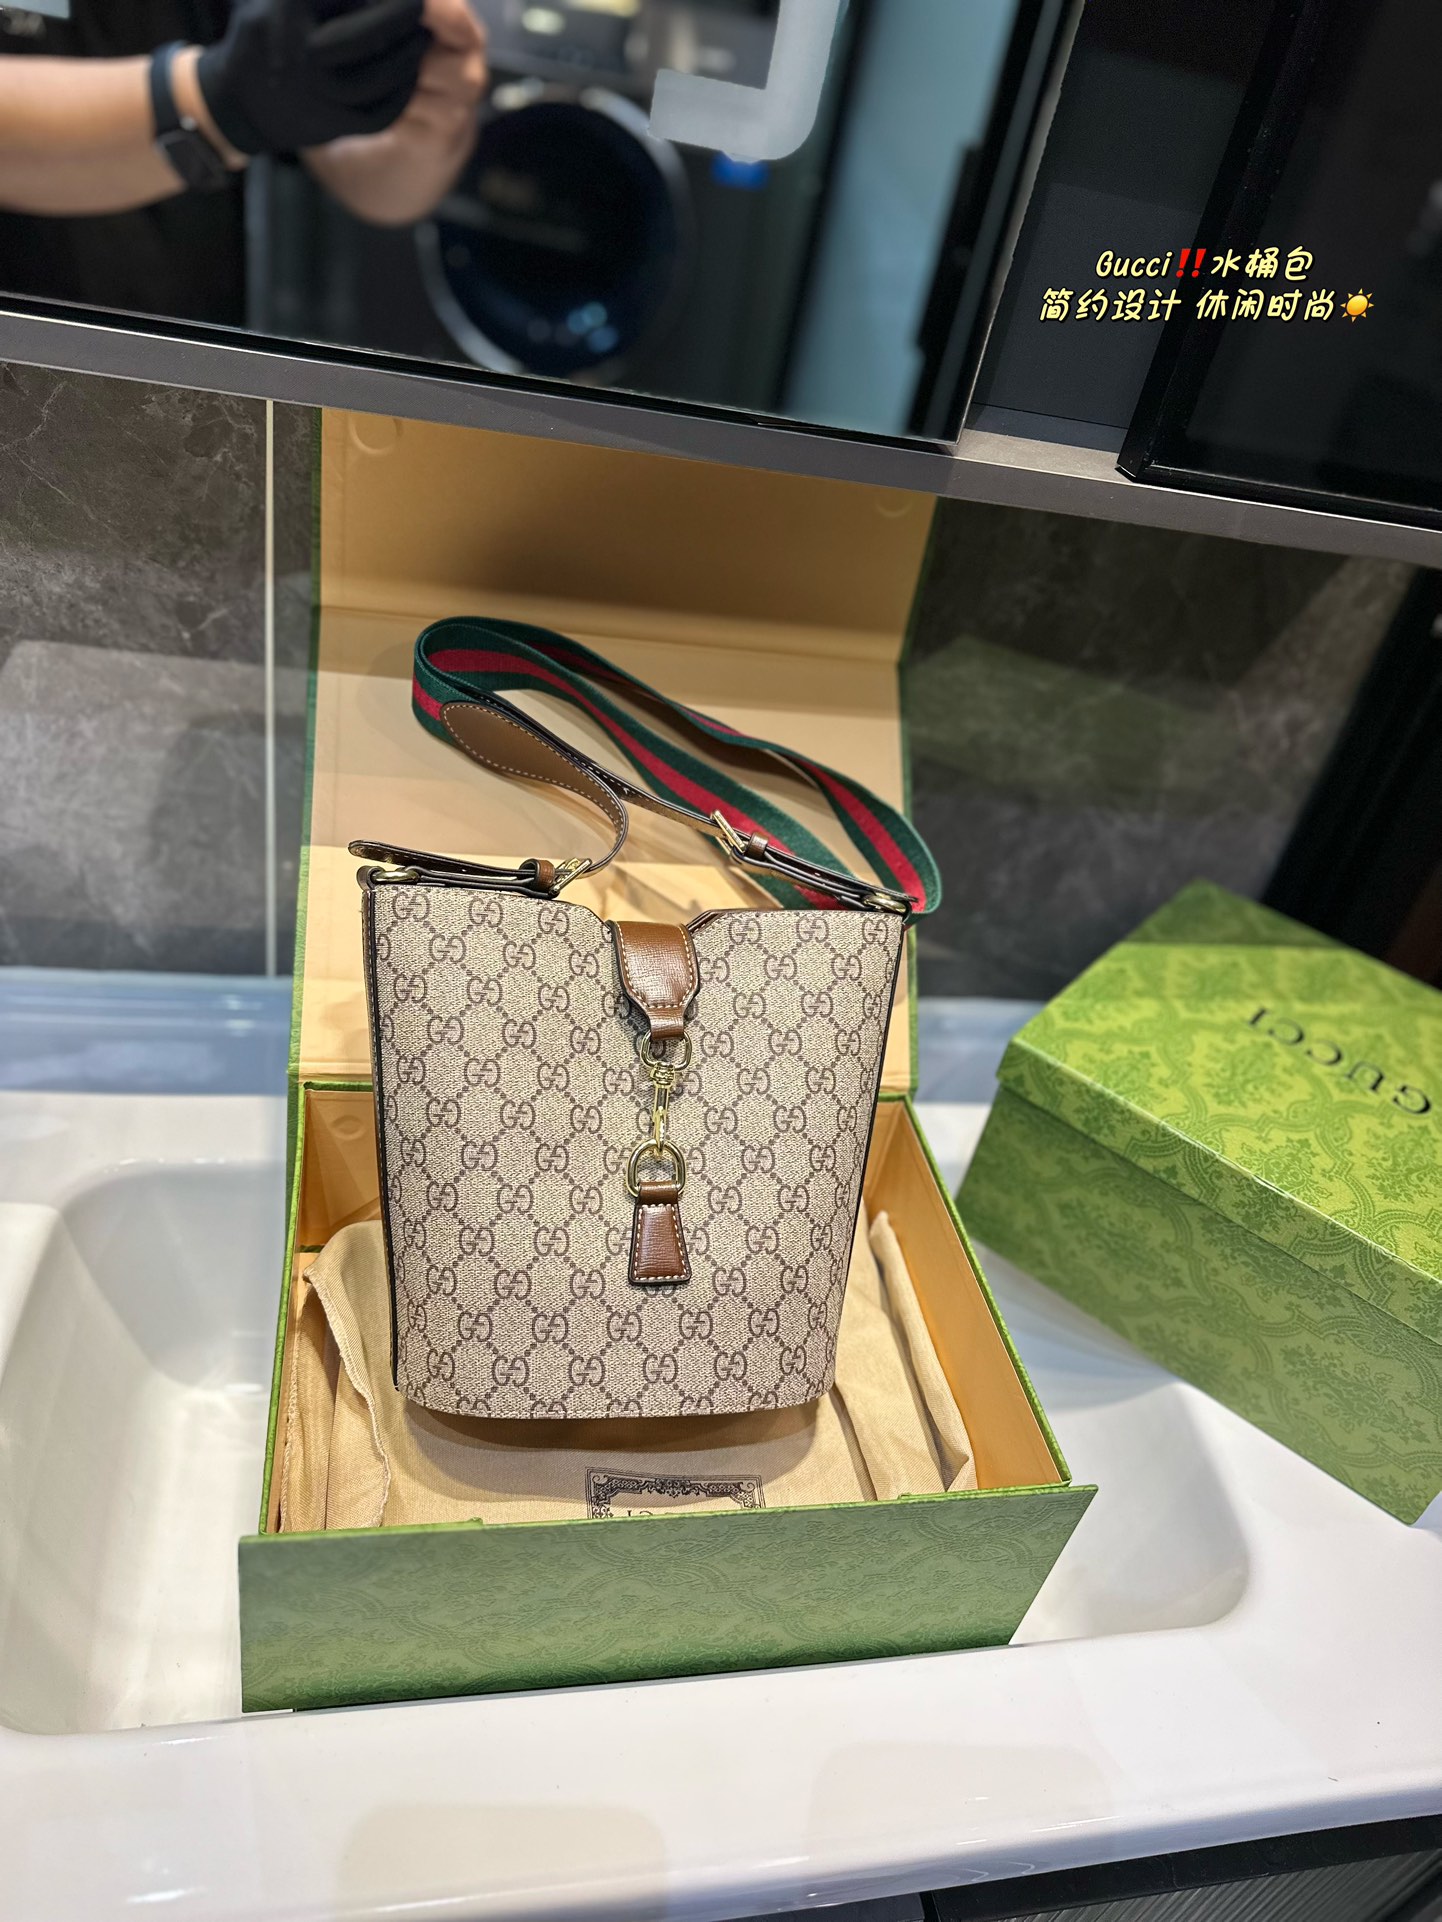 Gucci GG Supreme Torby kubełkowe Beżowy Brązowy Płótno Mini